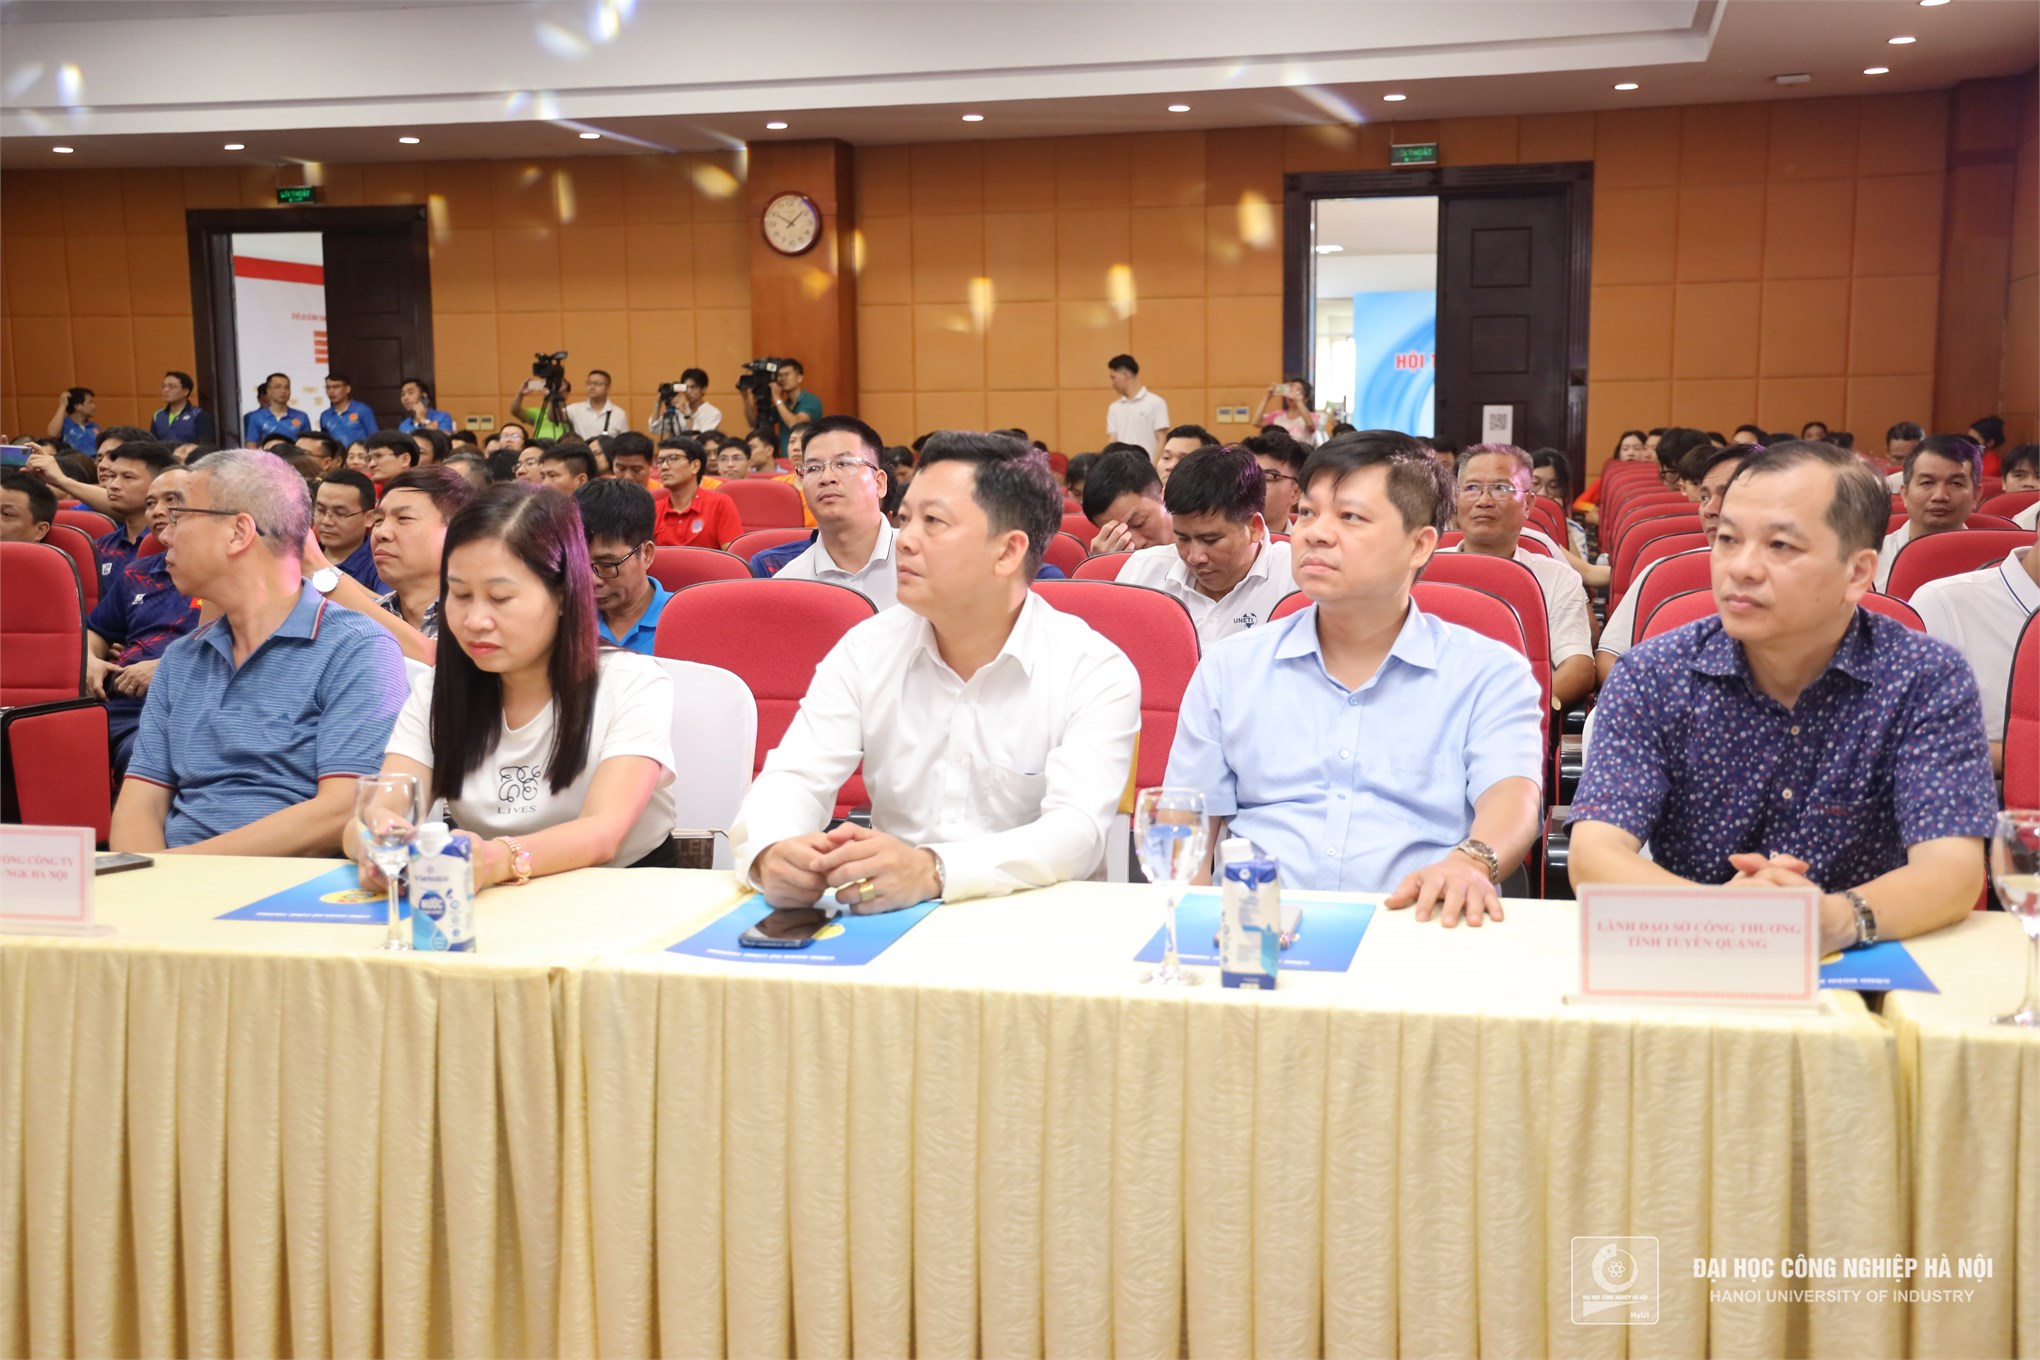 Đại học Công nghiệp Hà Nội lan toả tinh thần thể thao tại Hội thao Bộ Công Thương mở rộng lần thứ XII năm 2024